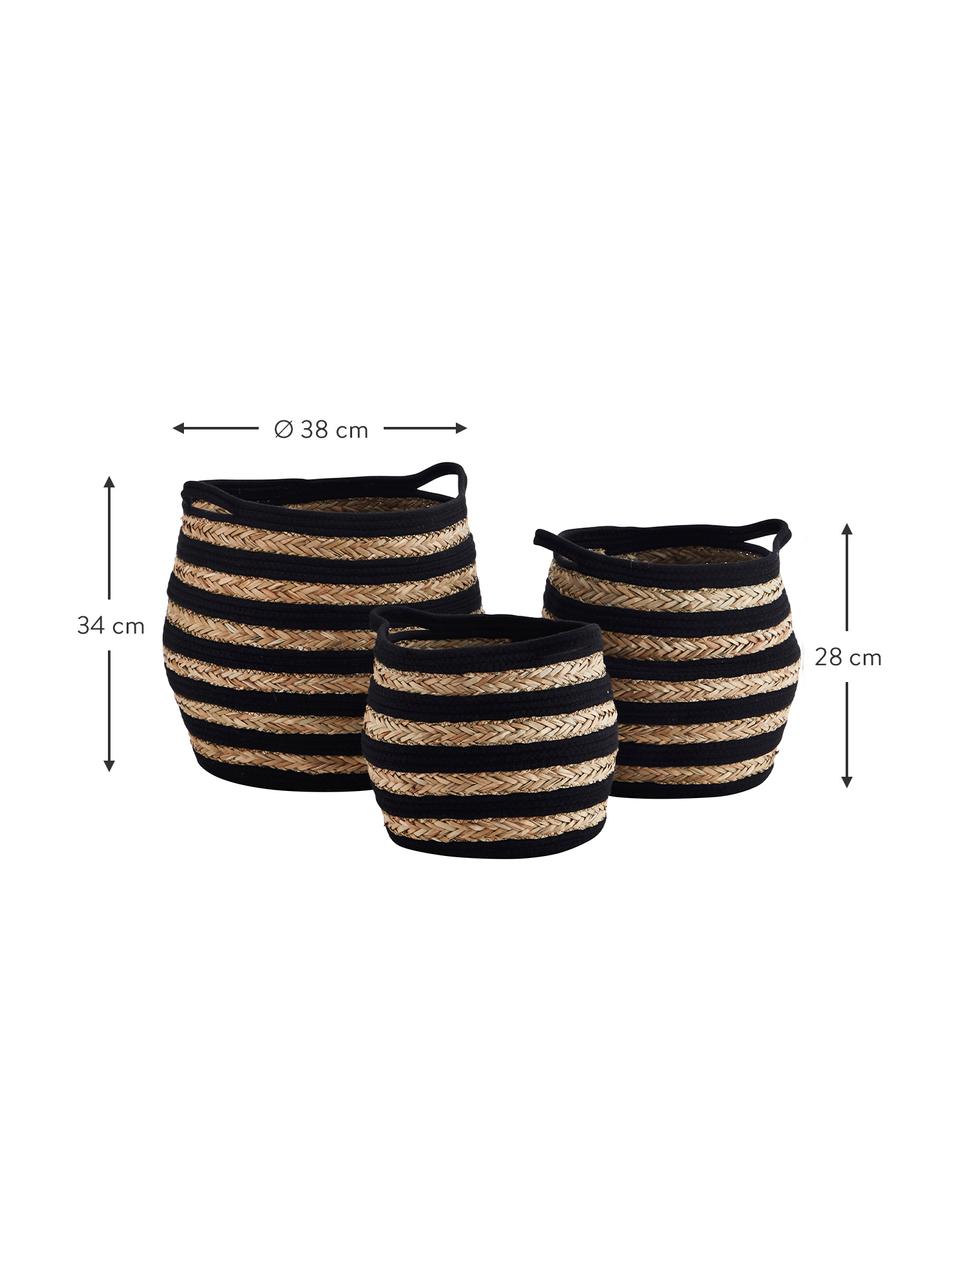 Aufbewahrungskörbe Striped aus Seegras, 3er-Set, Seegras, Baumwolle, Schwarz, Braun, Set mit verschiedenen Größen